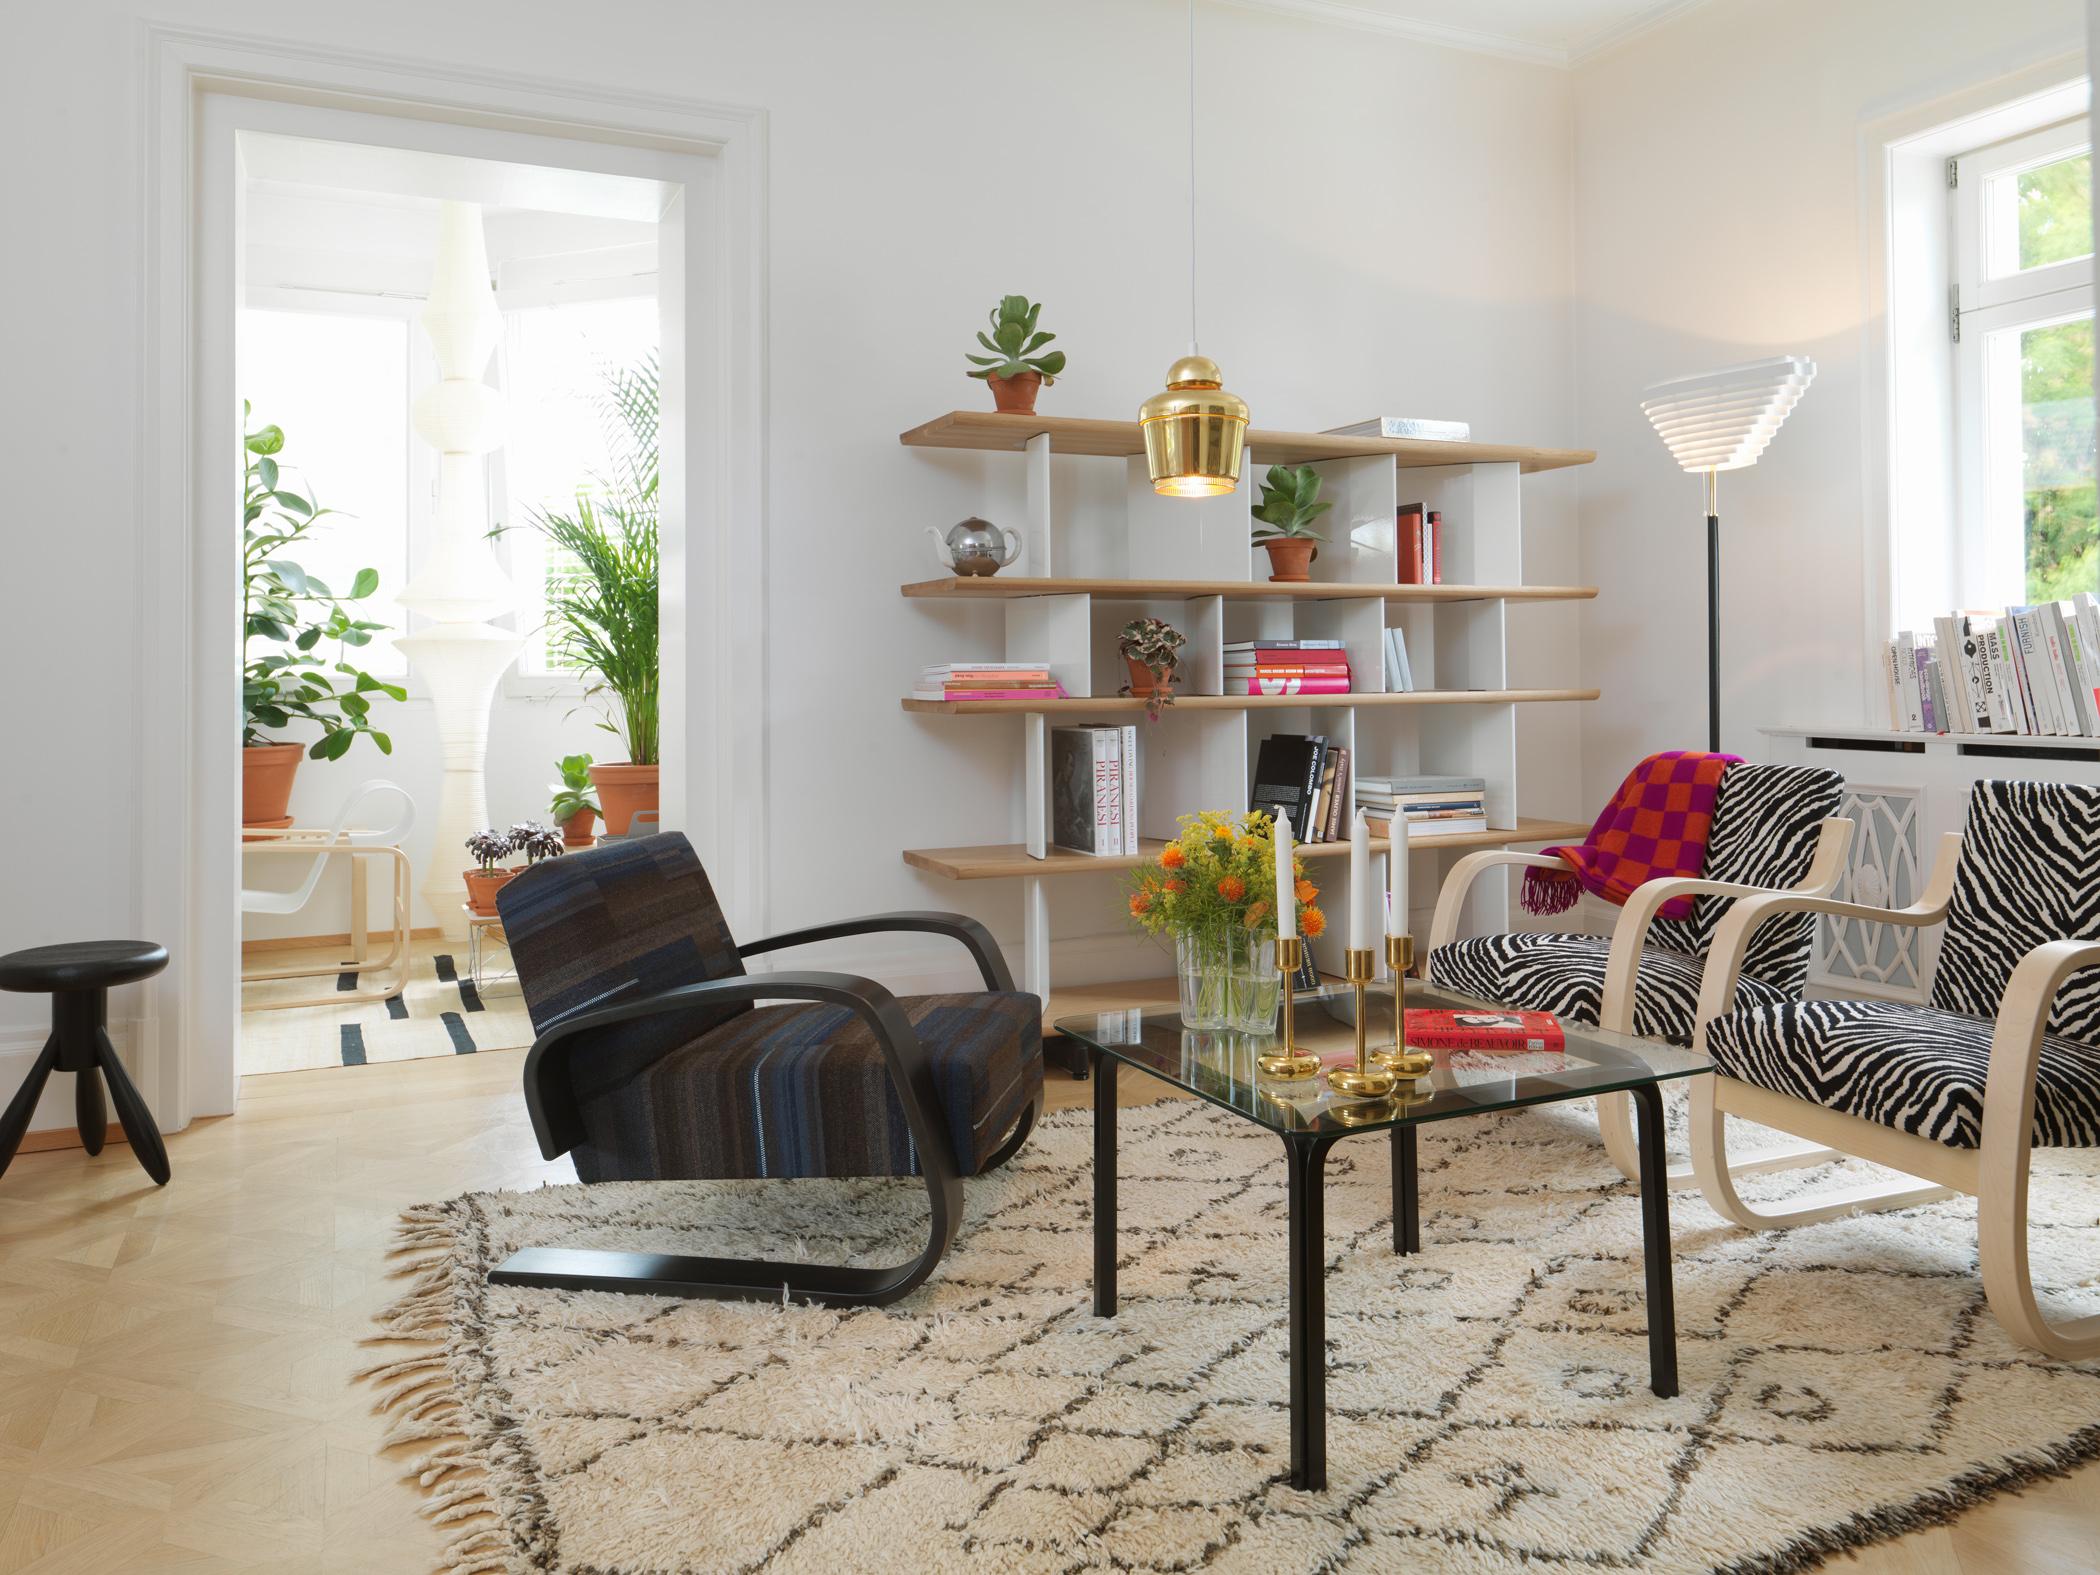 Sessel mit Animal-Print #couchtisch #wandregal #teppich #wohnzimmer #sessel #hölzerneswandregal #glascouchtisch #gestreiftersessel ©Vitra/Marc Eggimann